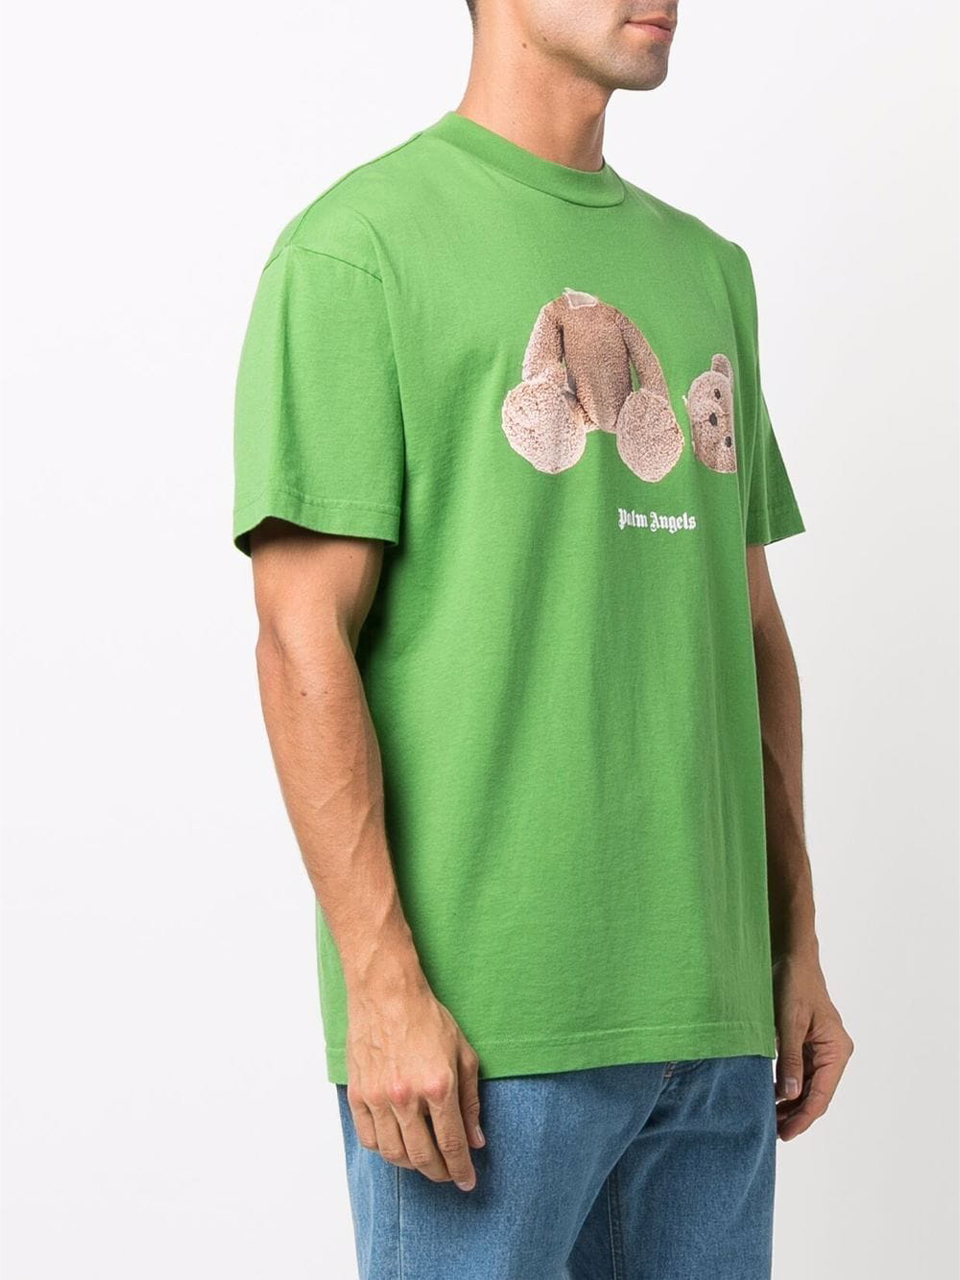 Camiseta Palm Angels Verde Estampa Urso - SuaGrife